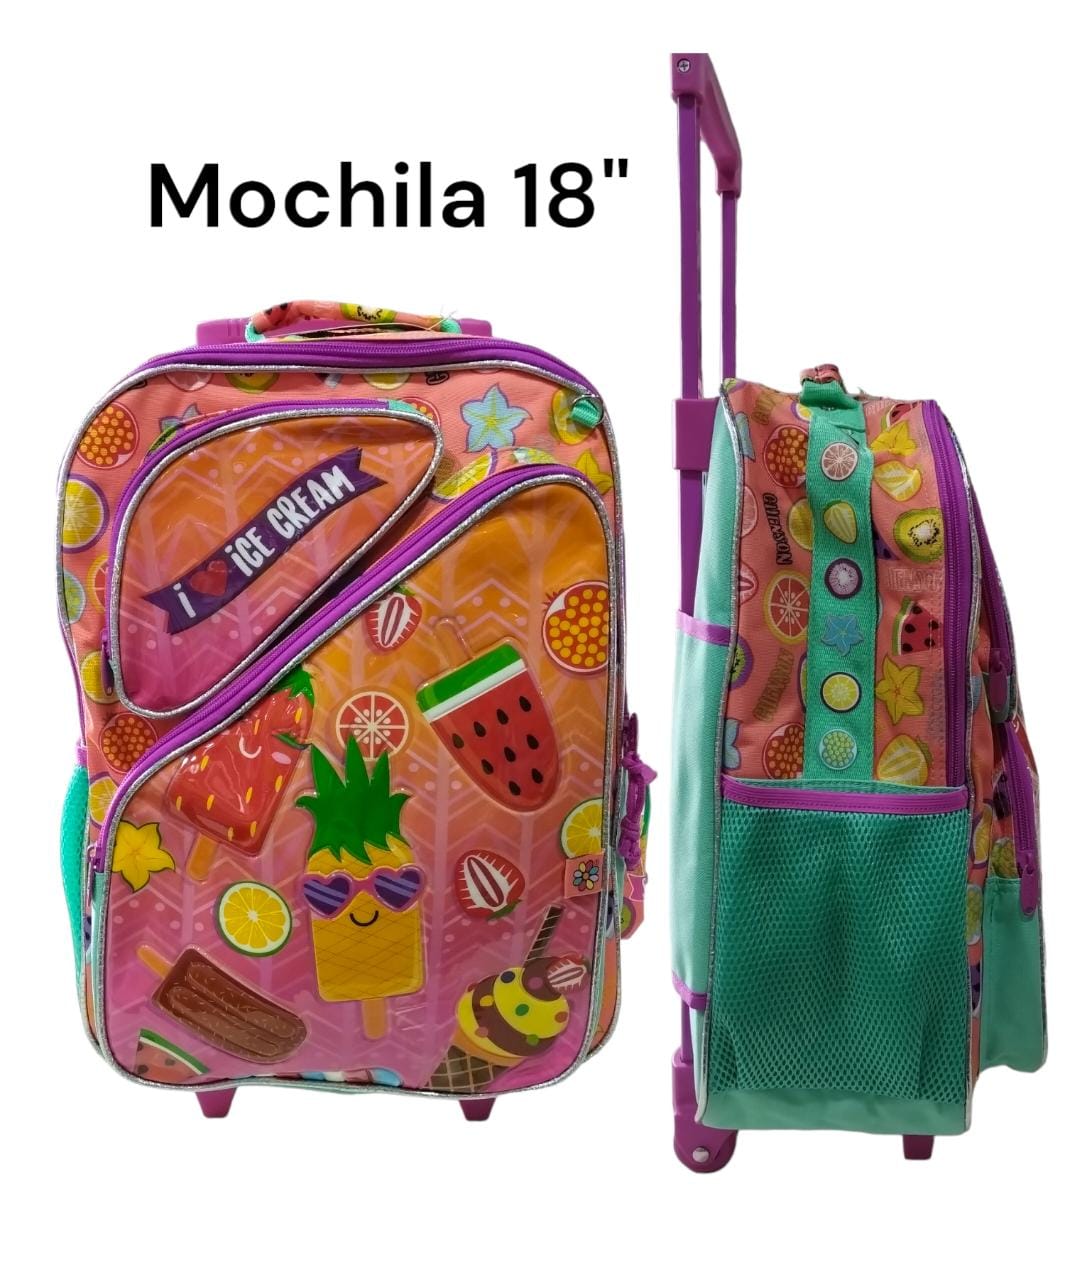 Mochila 18